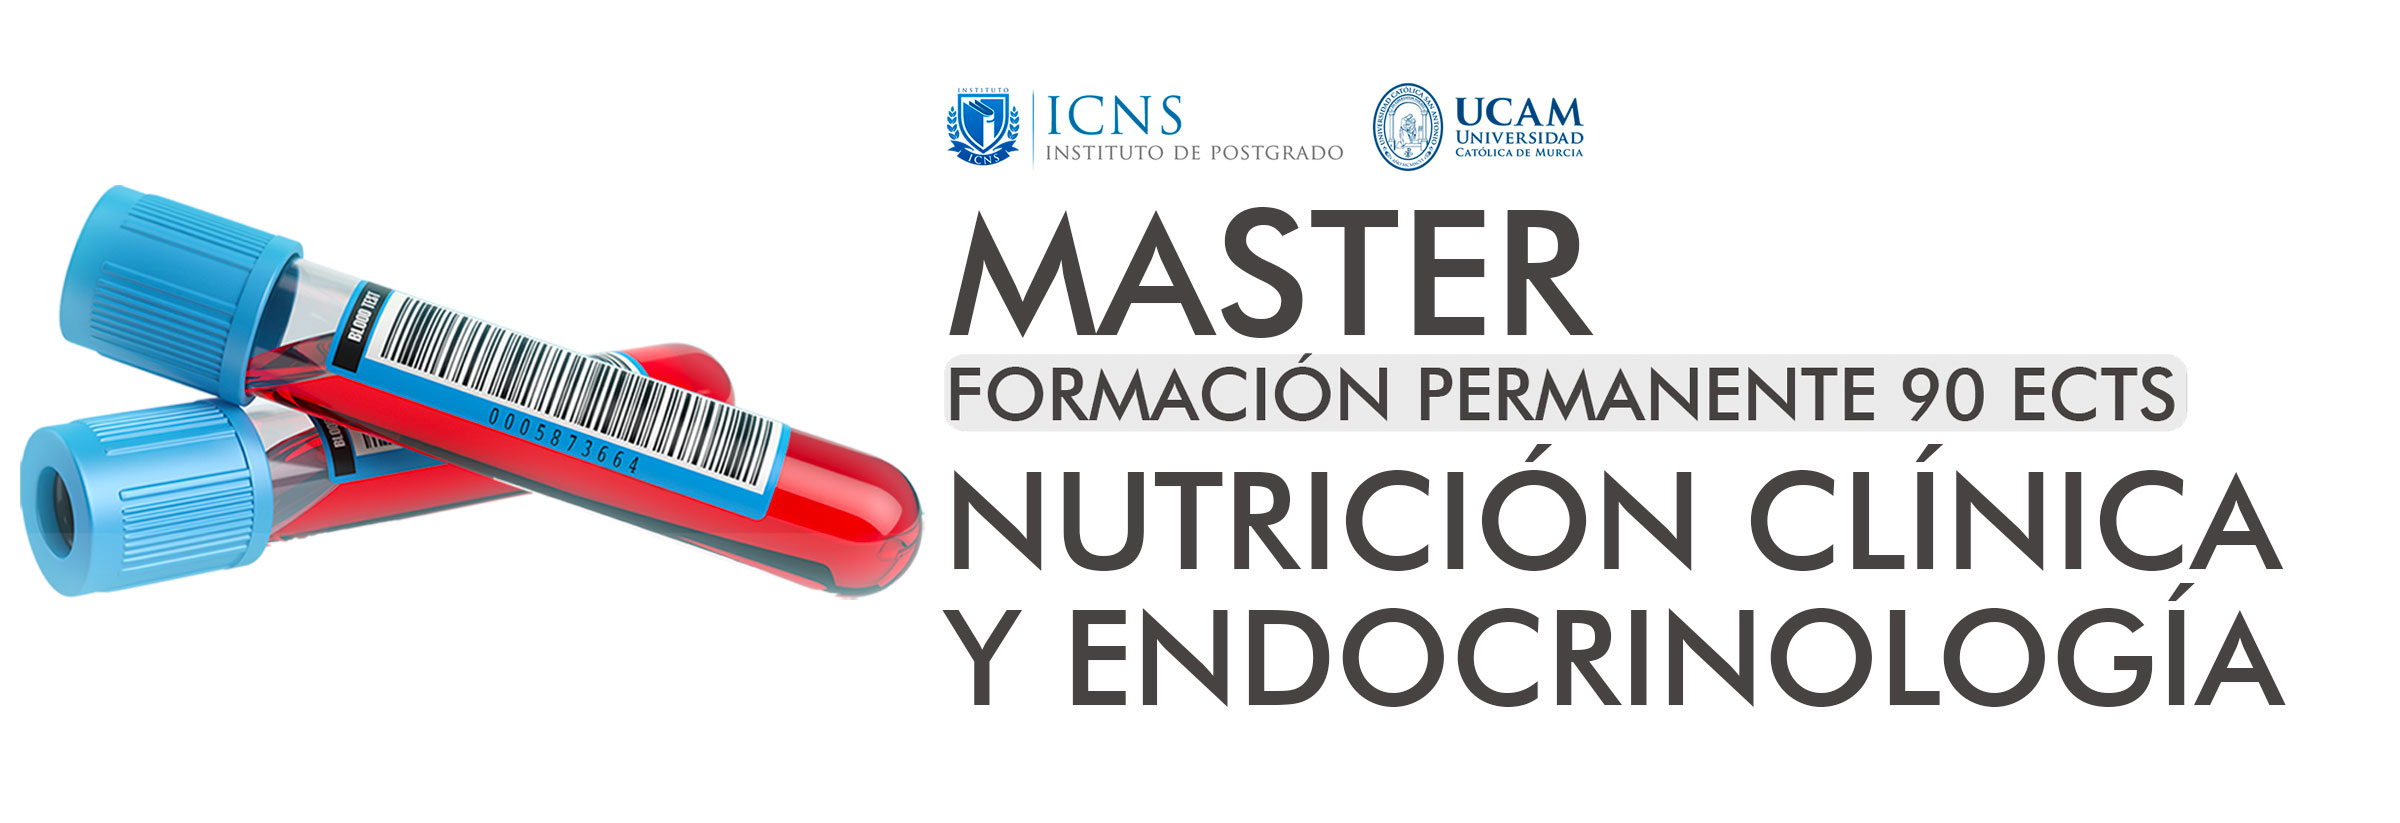 Máster en Nutrición Clínica y Endocrinología (CLMASTERENDO8)